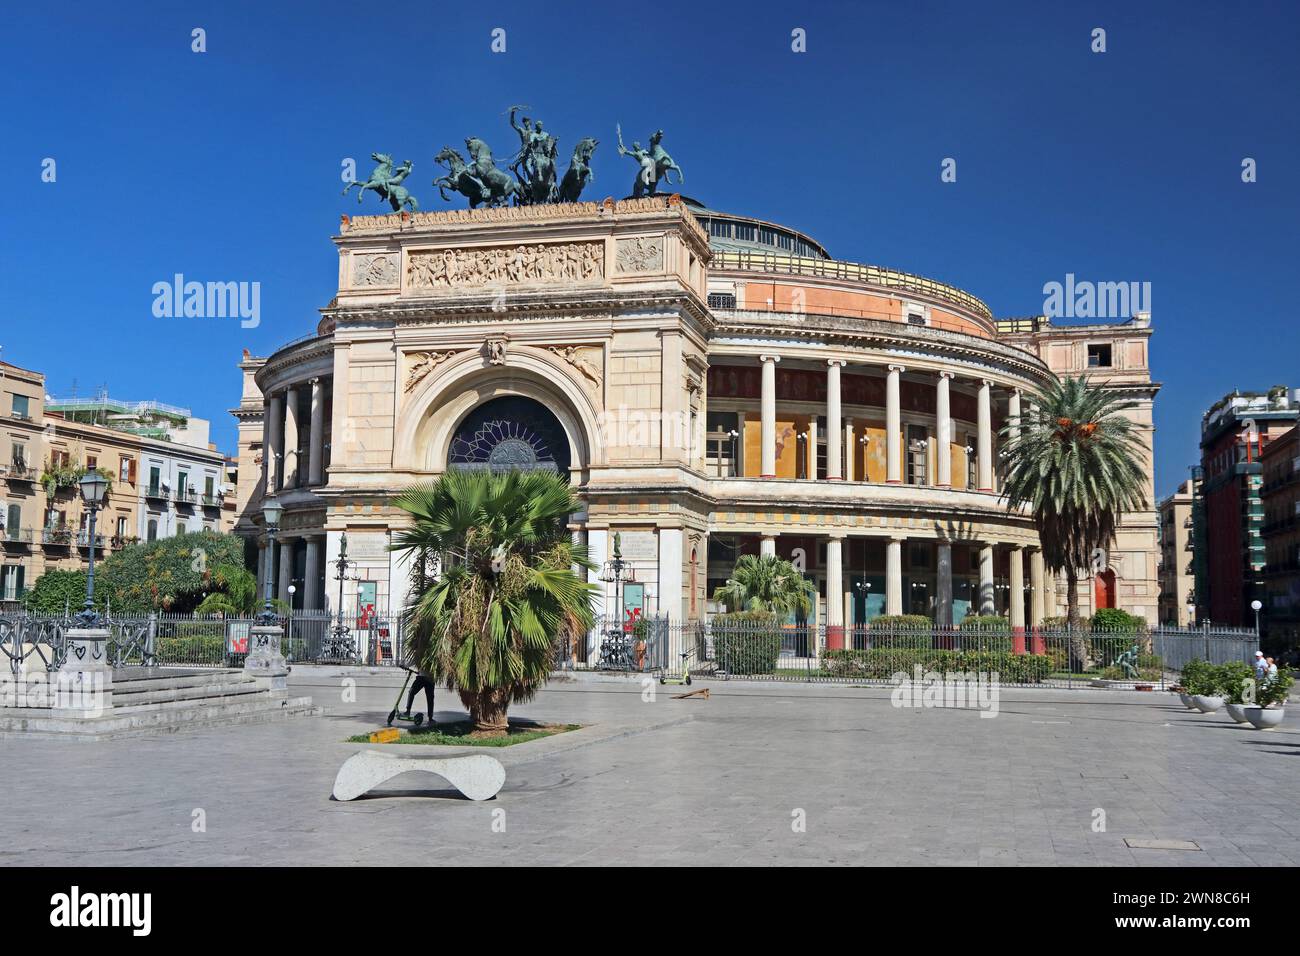 Garibaldi Theatre, Palermo, Sicily Stock Photo